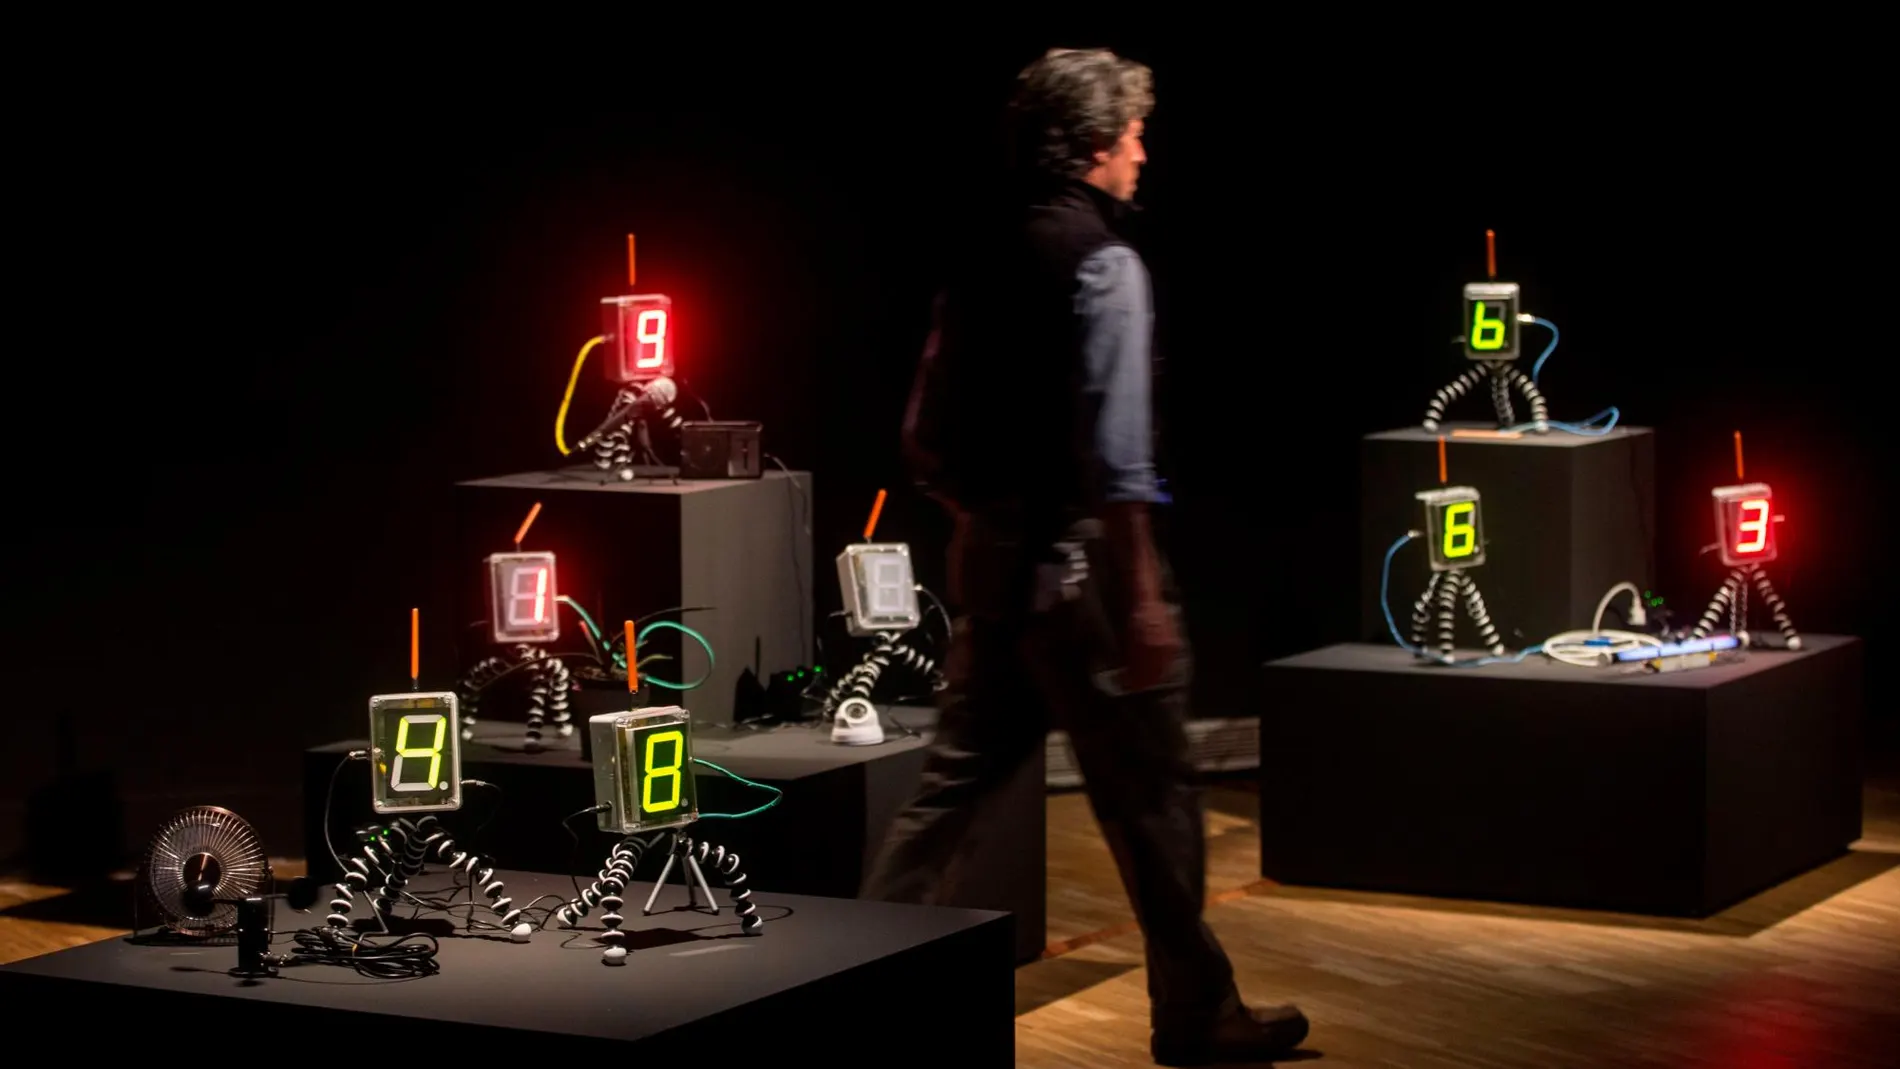 Vista de la obra "A state of sin", del artista británico James Bridle, que forma parte de la exposición "Cuántica", que nos muestra las claves para entender los principios de la física cuántica a través del trabajo creativo de científicos y artistas, y que ha sido presentada este martes en el Centre de Cultura Contemporània de Barcelona (CCCB). EFE/Quique Garcia